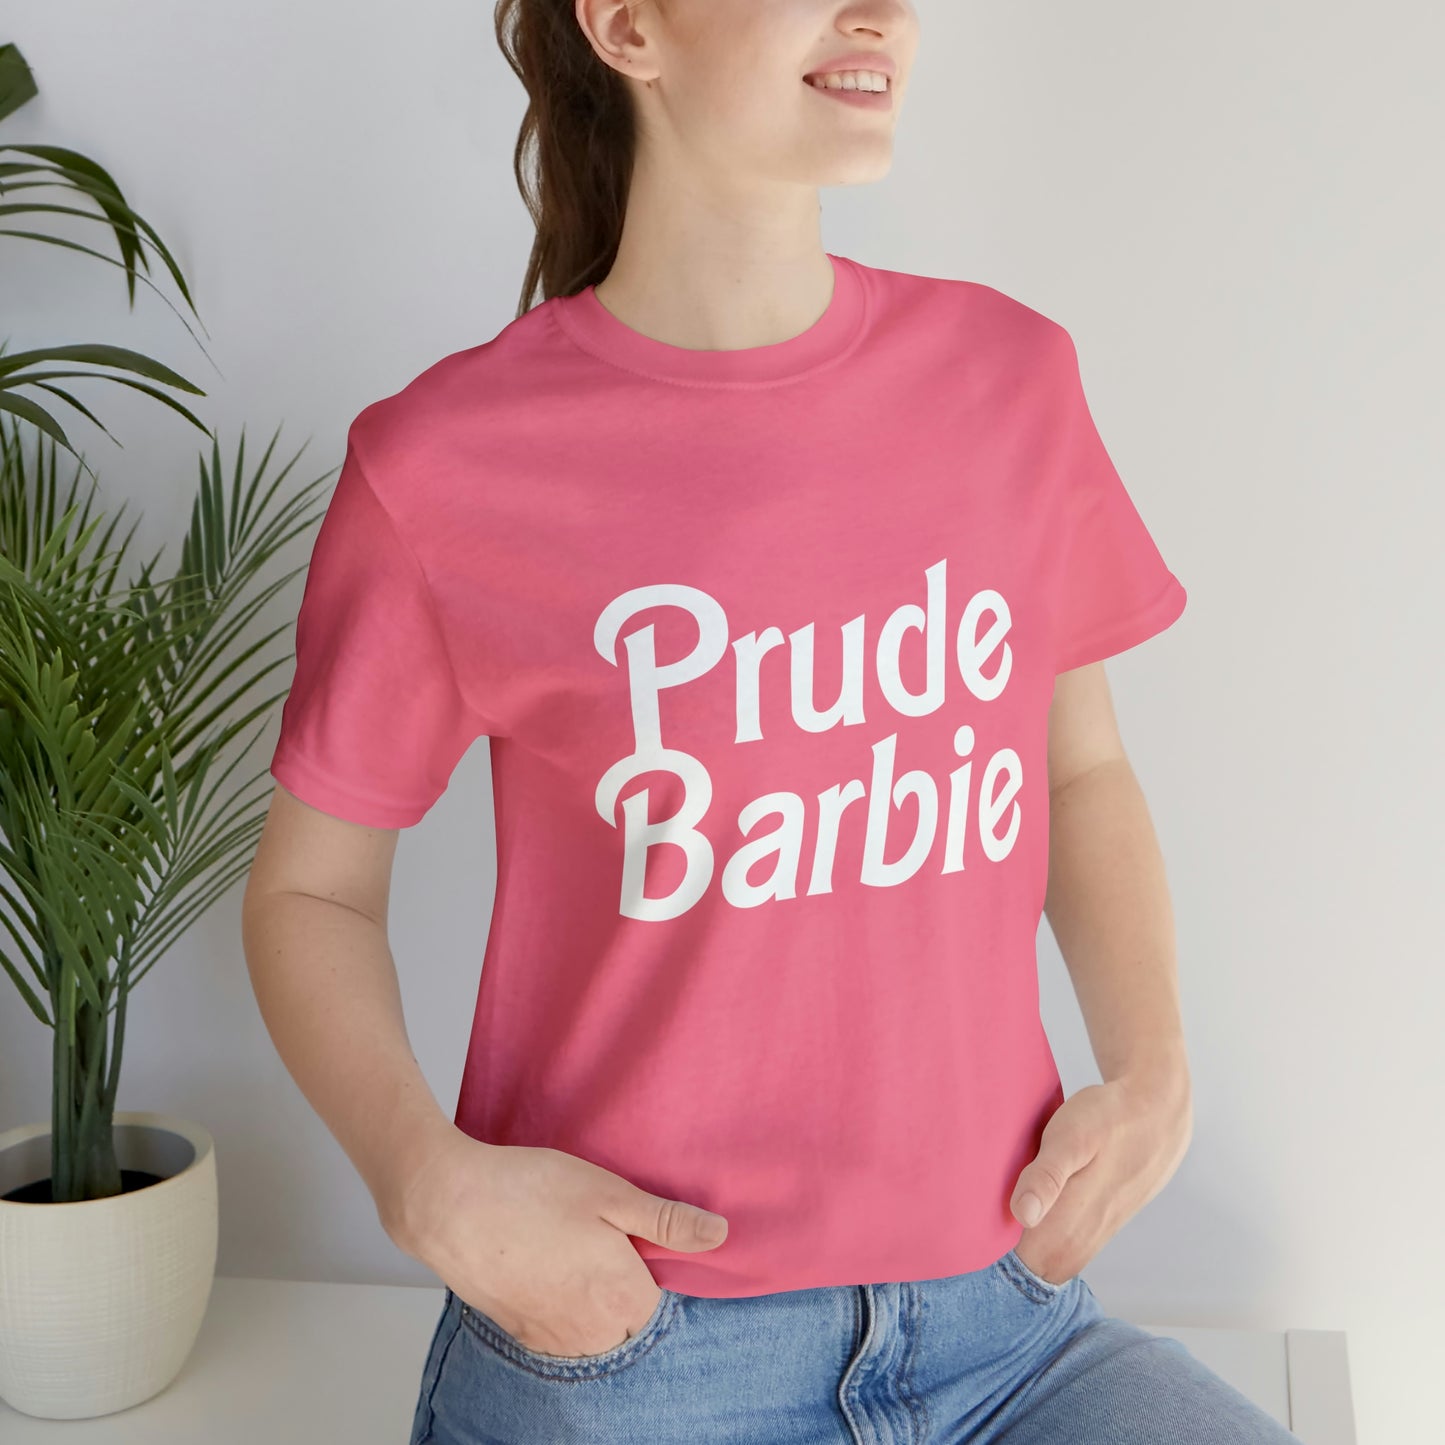 Prude Barbie